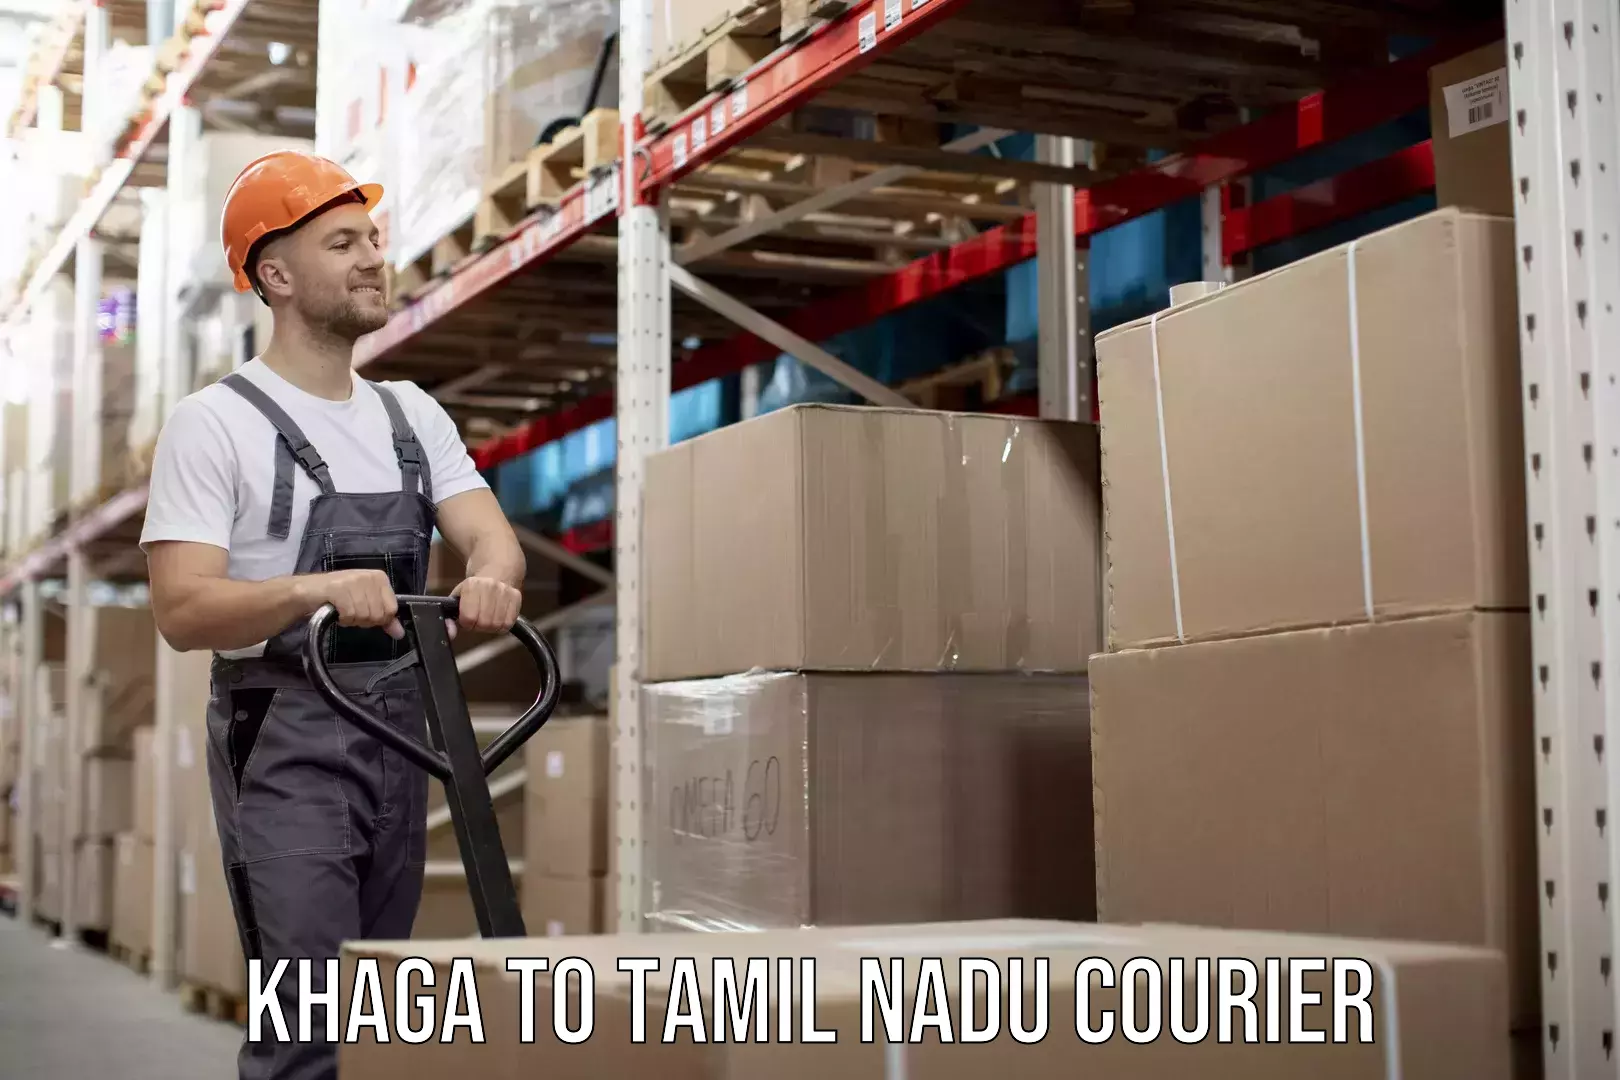 Furniture transport company Khaga to Tamil Nadu